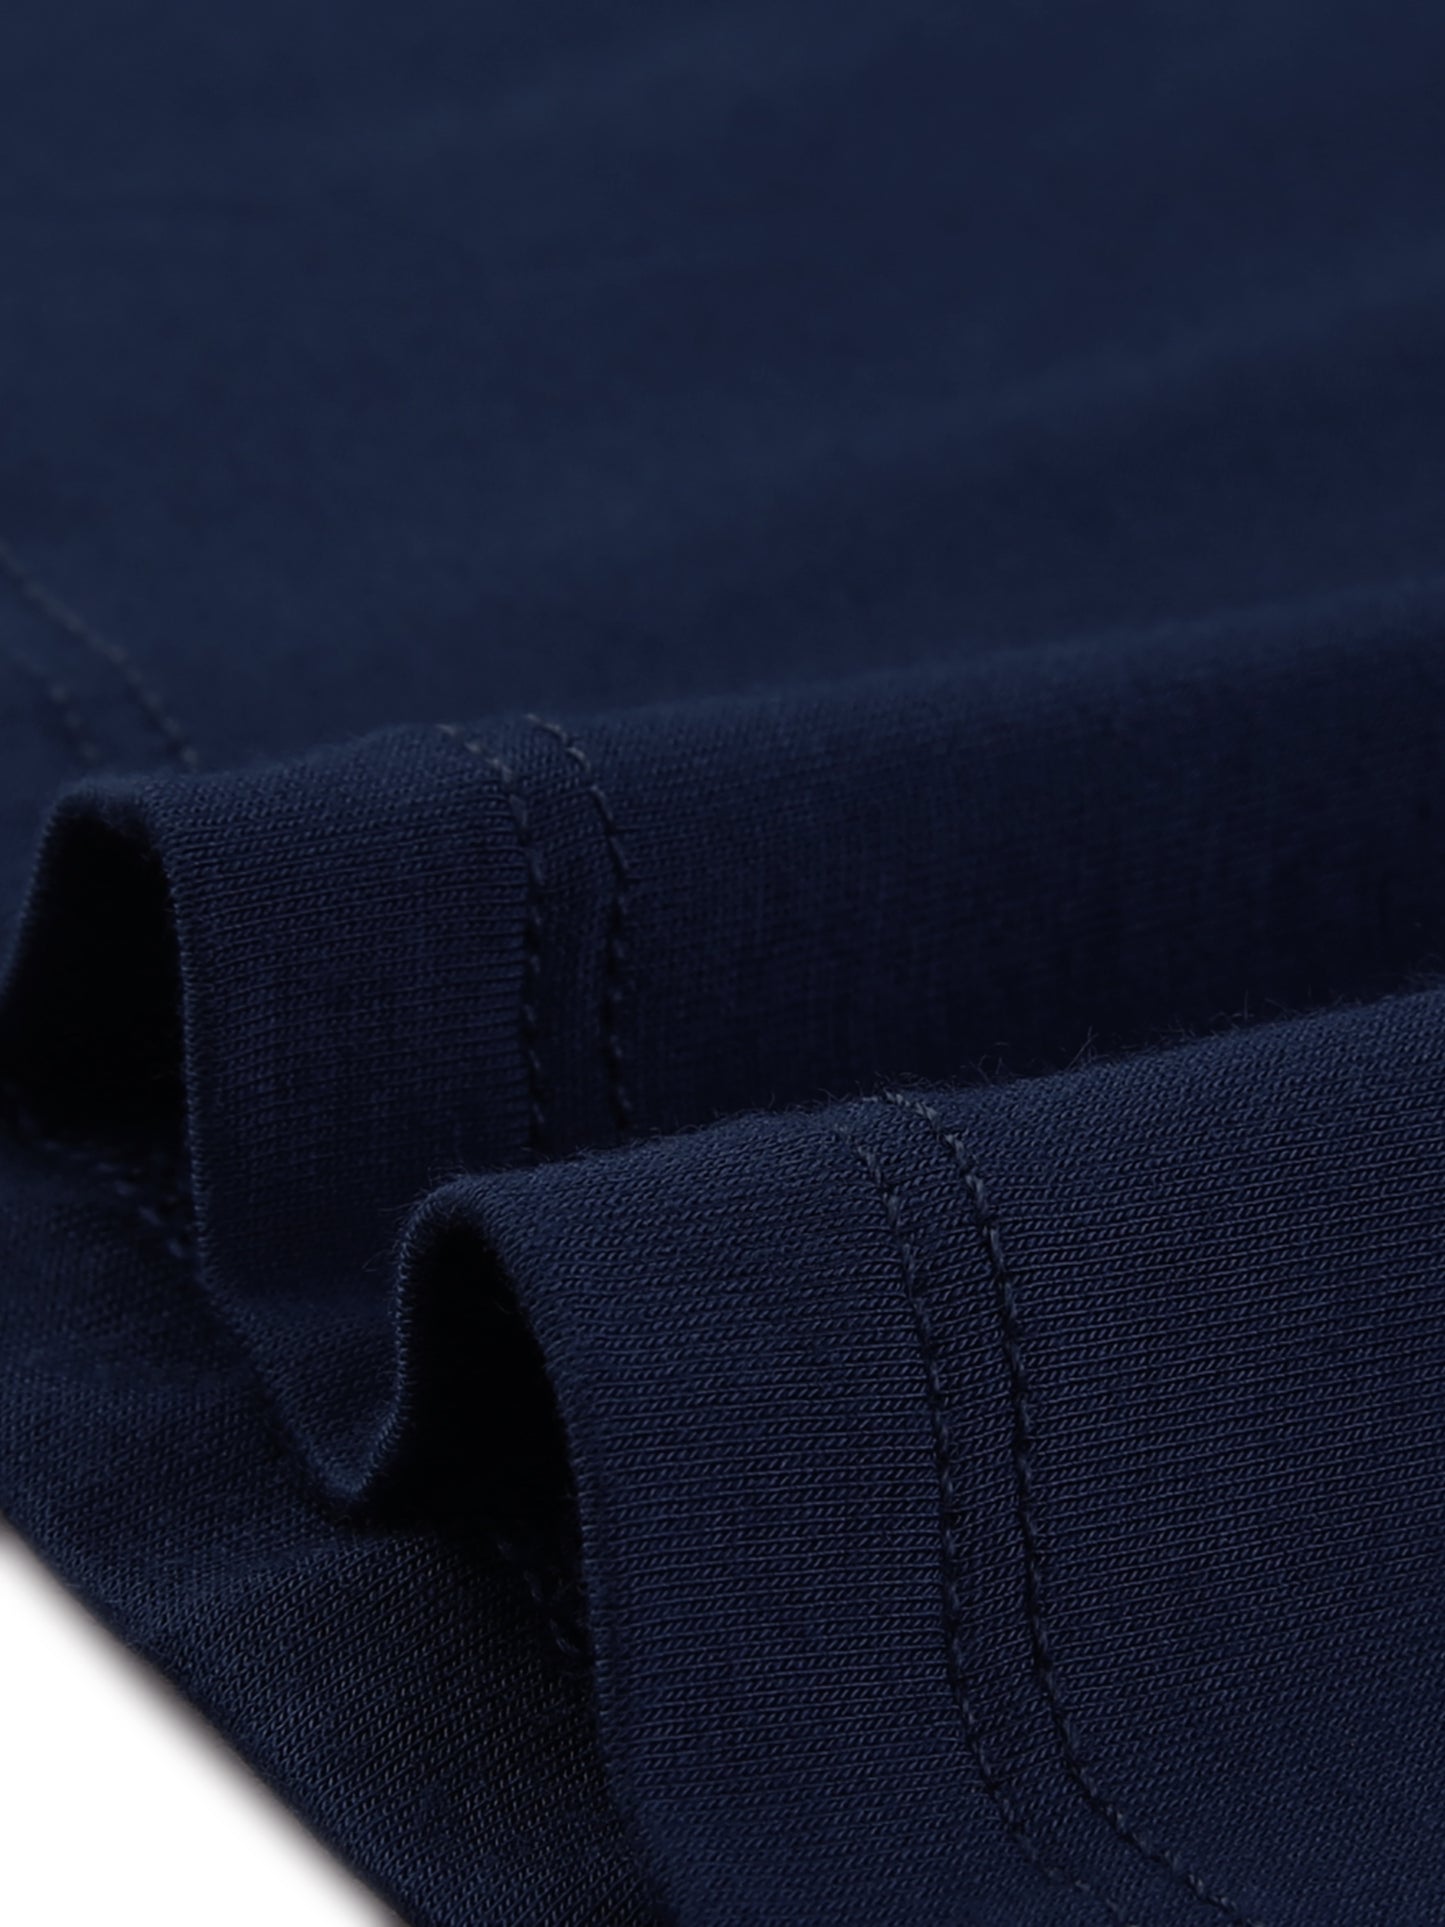 cheibear Sleeveless Sleepwear Chemises Lingerie V Neck Full Slip Pajama Dress Navy Blue